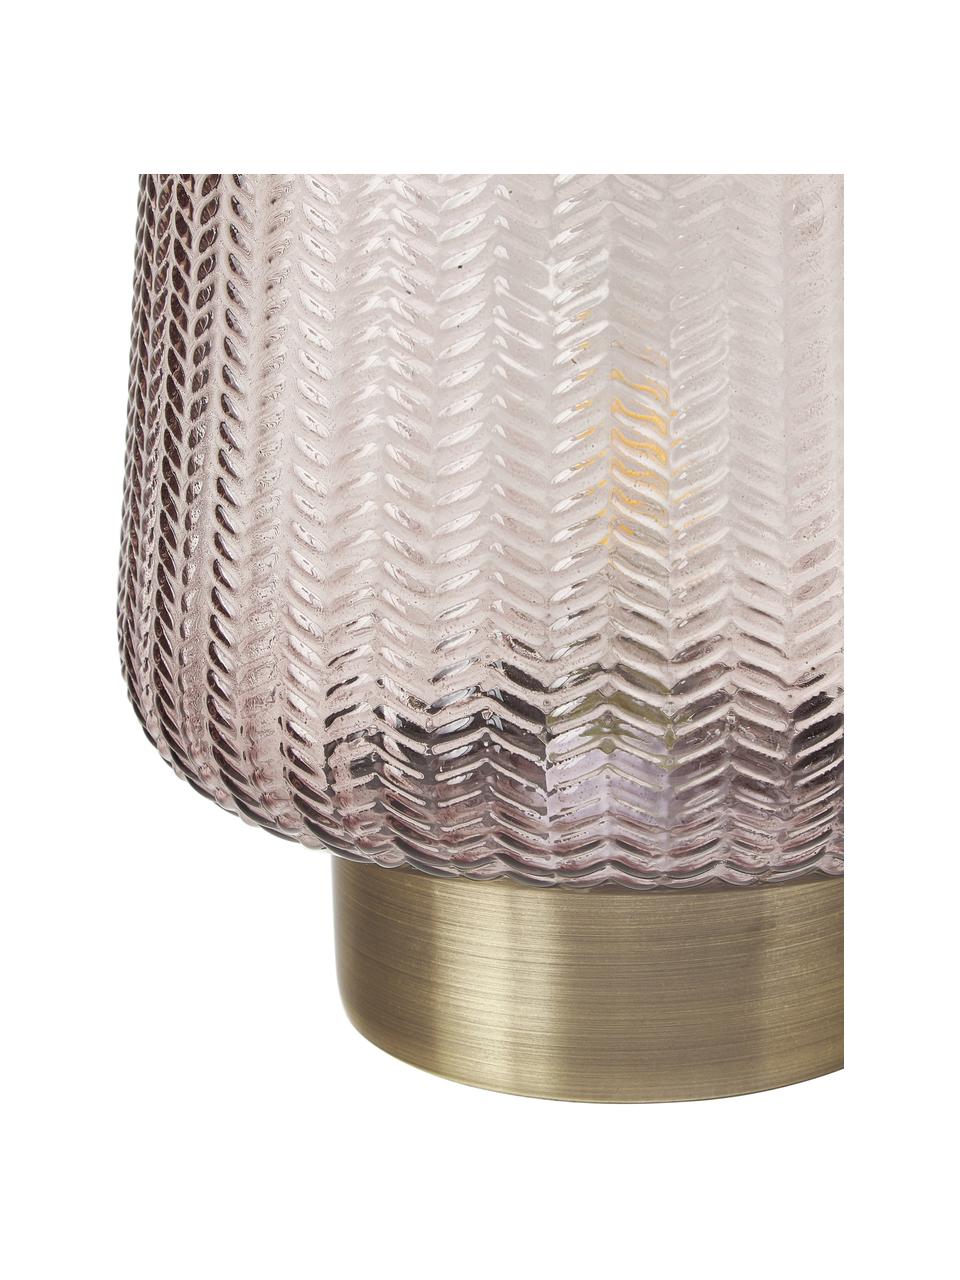 Mobilna lampa stołowa LED z funkcją timera Fancy Glamour, Szkło, metal, Taupe, odcienie złotego, Ø 19 x W 26 cm